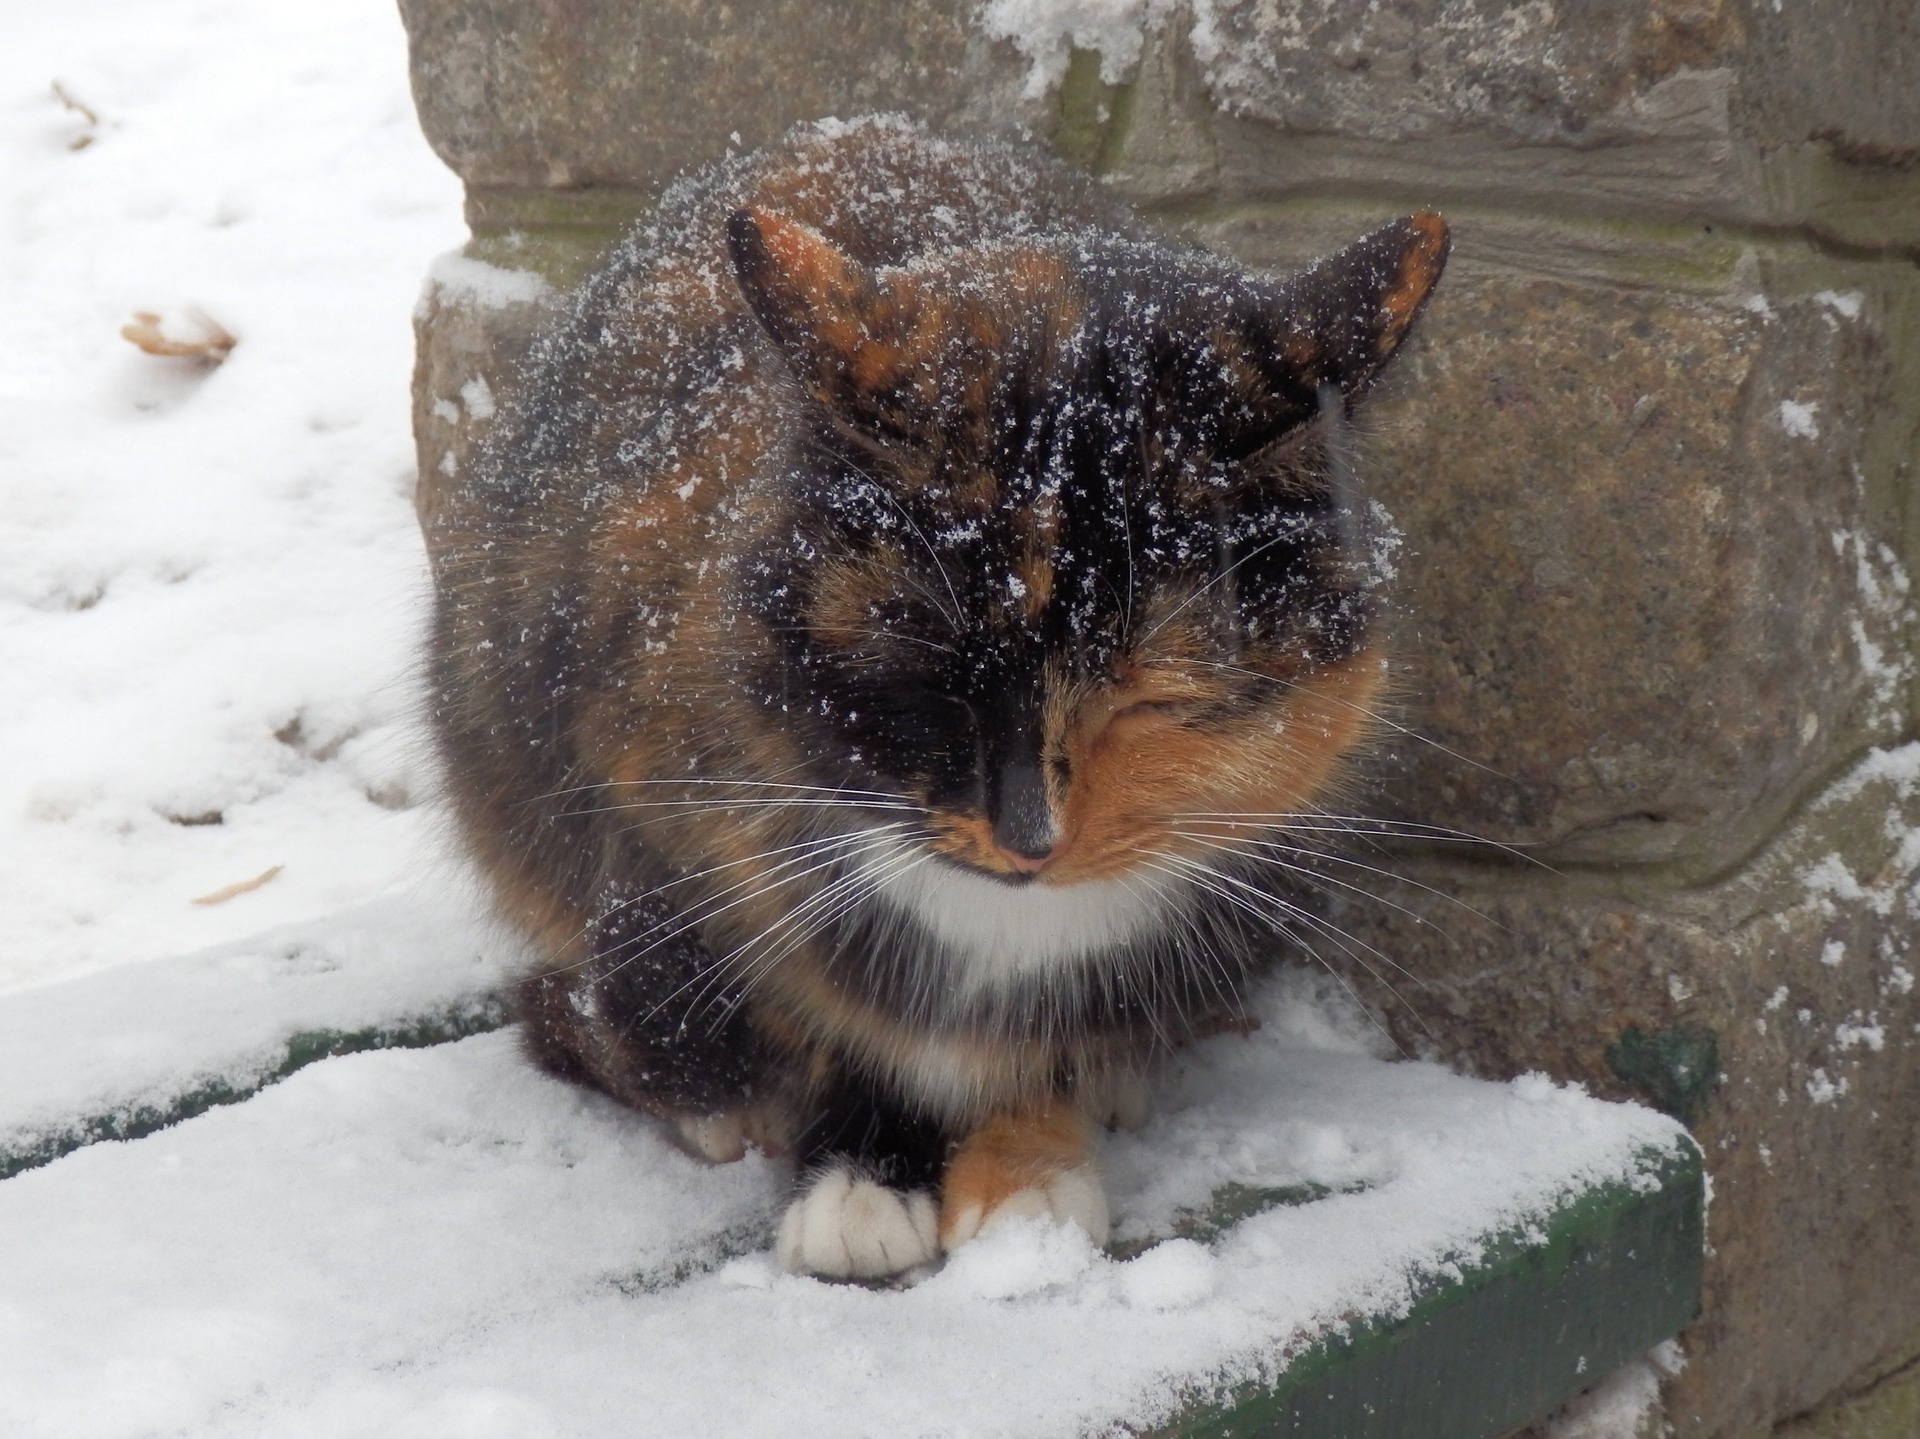 leaving cat outside in winters